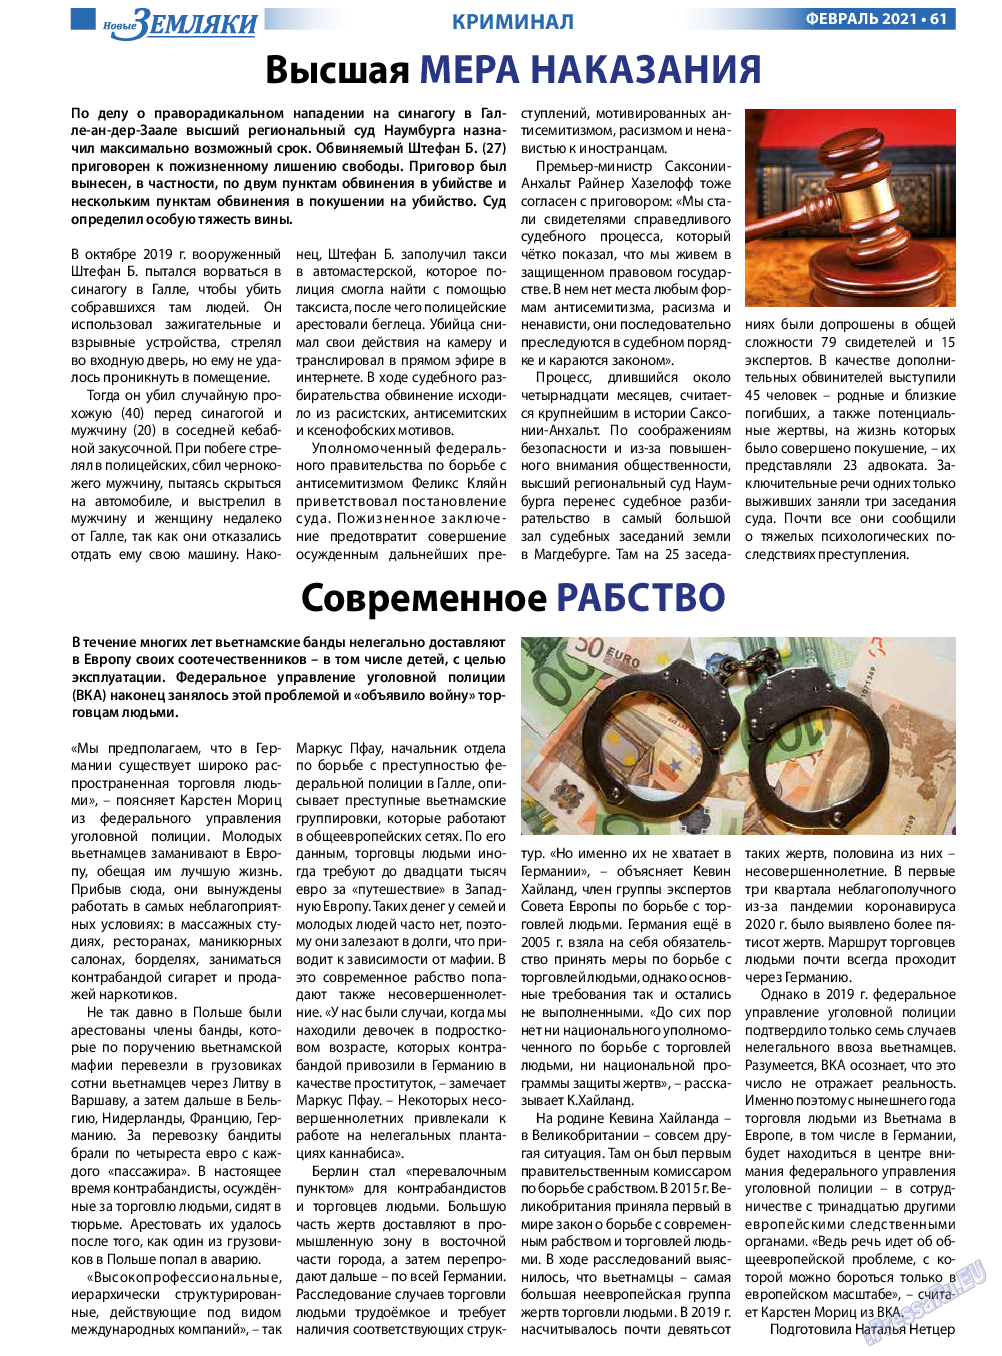 Новые Земляки, газета. 2021 №2 стр.61